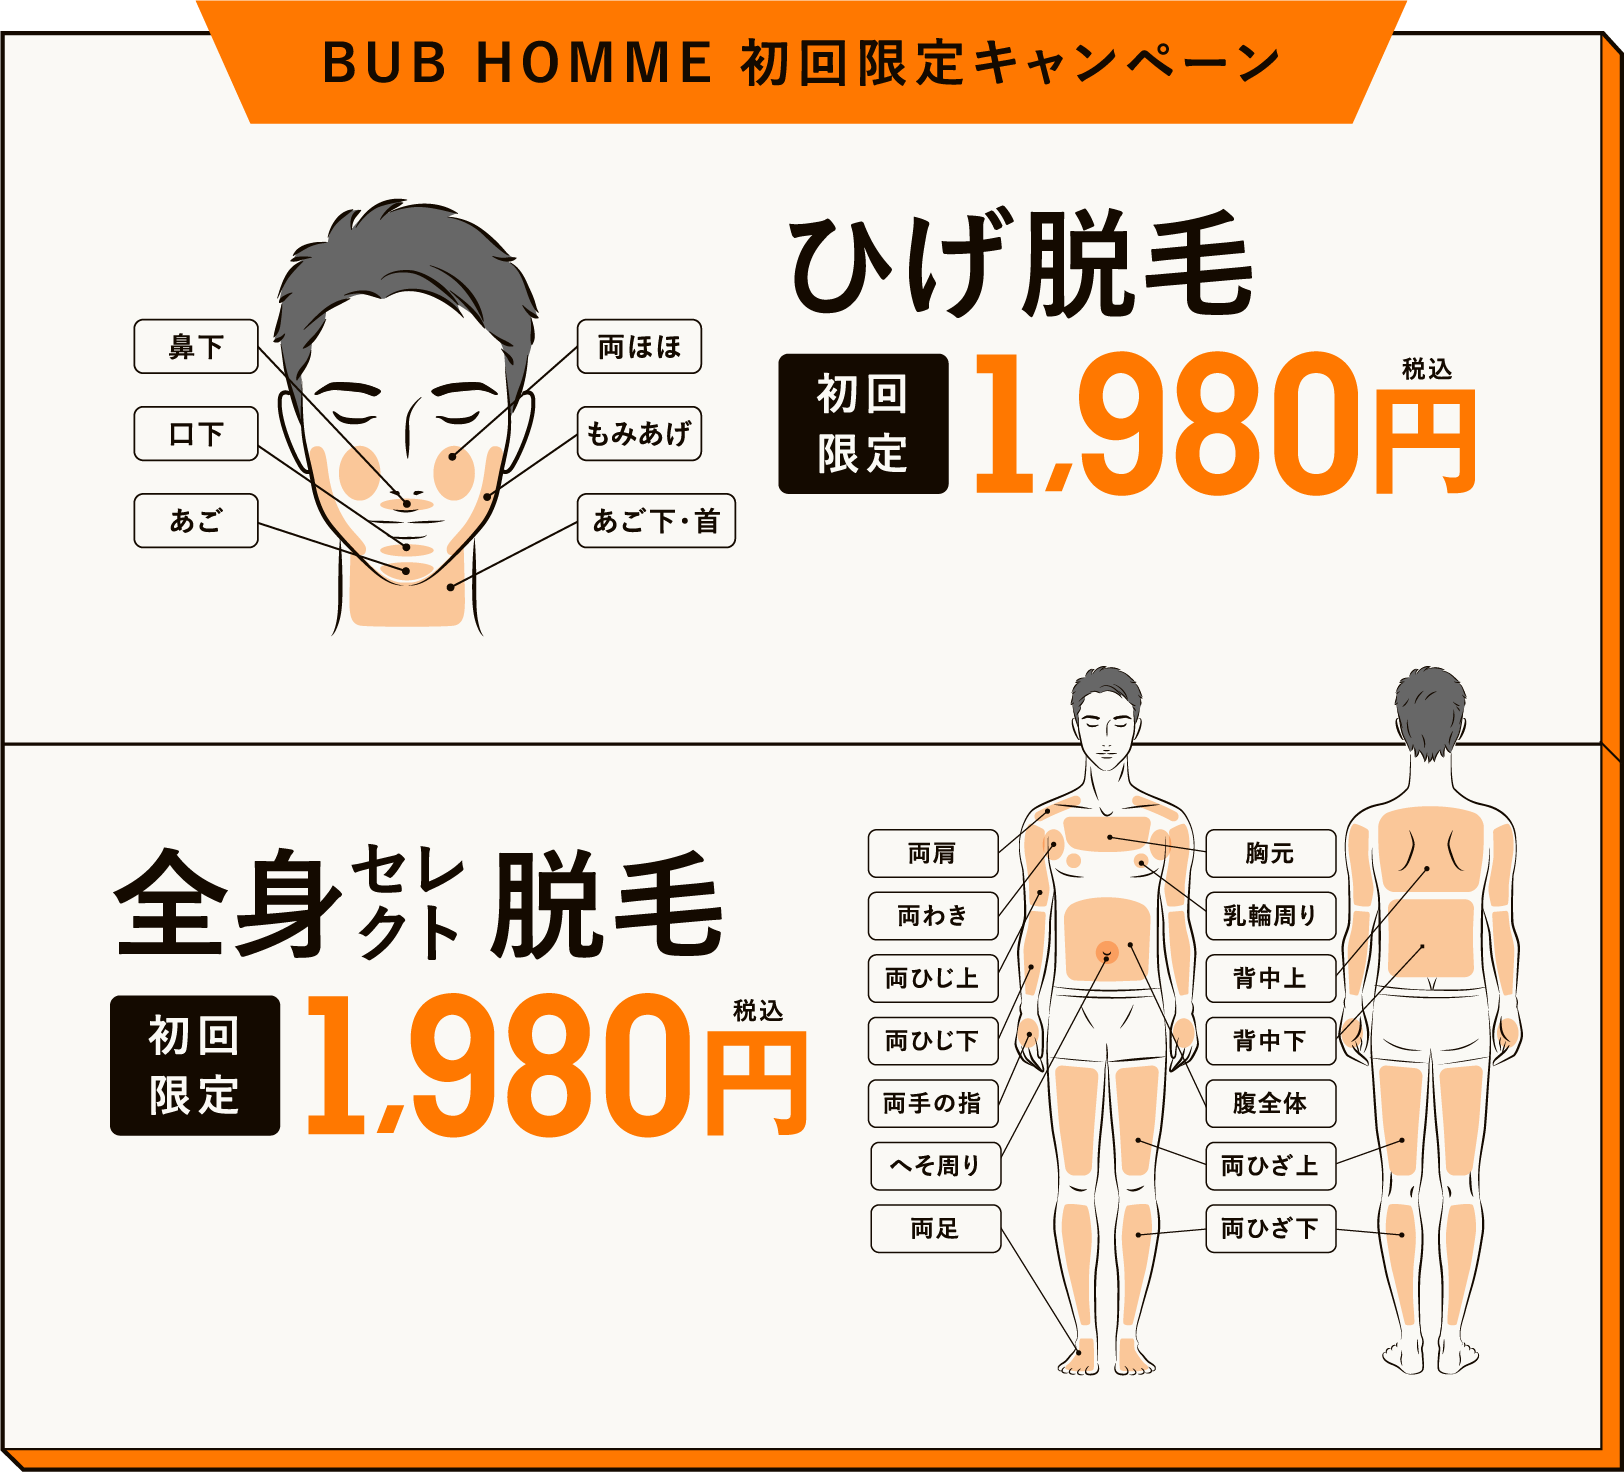 BUB HOMME 初回限定キャンペーン